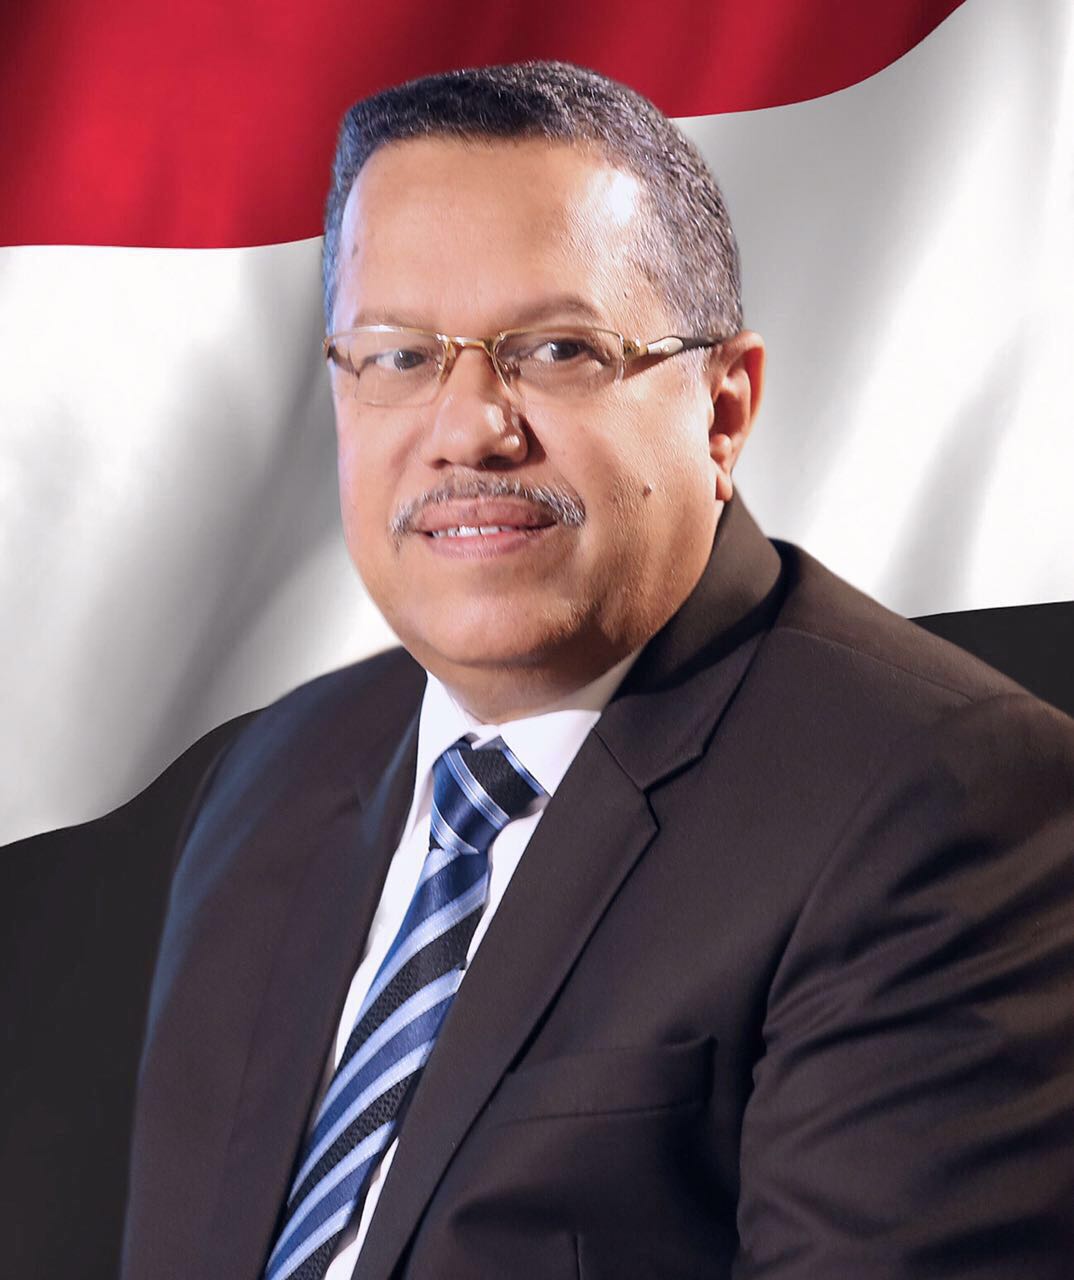 عاجل : رئيس مجلس الشورى يستقبل عدد من التهاني والتبريكات بمناسبة تعيينه رئيسا لمجلس الشورى 